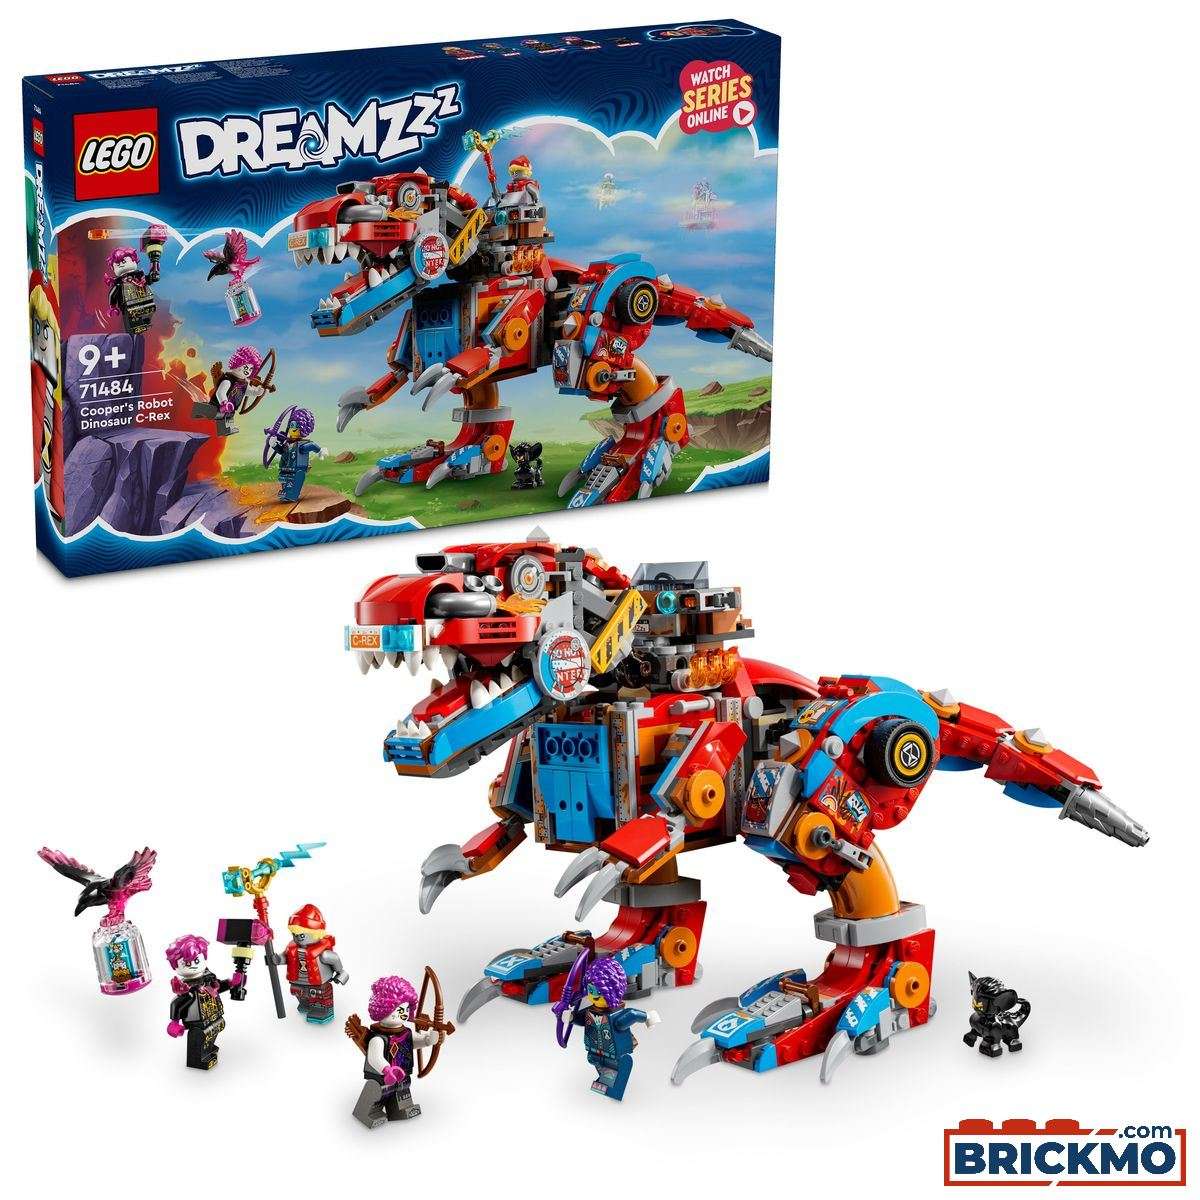 LEGO DreamZzz 71484 Dinorobot Coopera C-Rex 71484